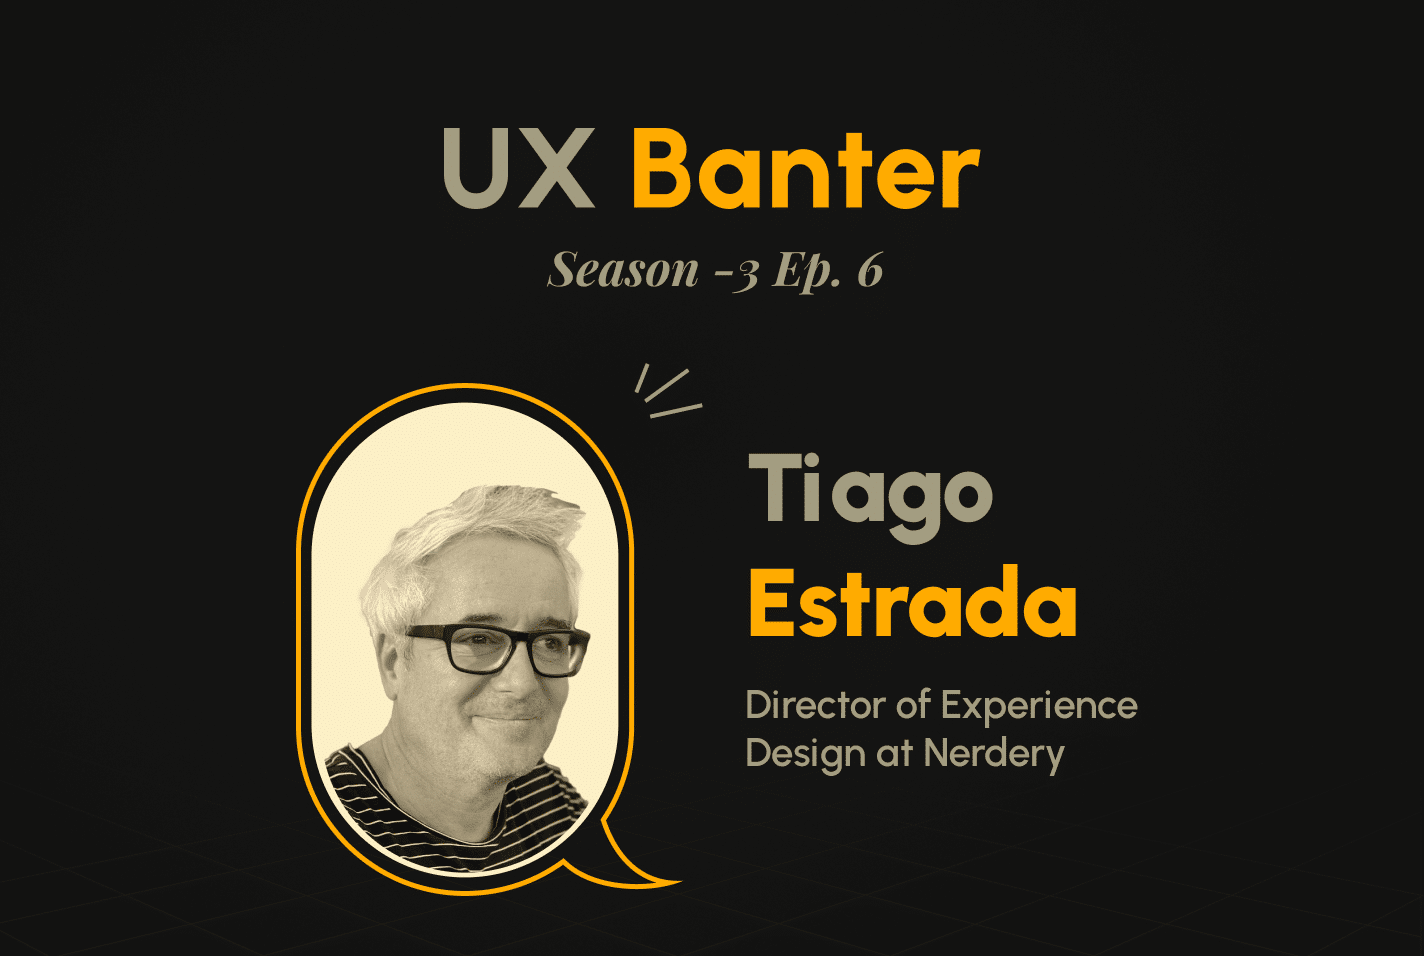 UX Banter Season 3: Episode 6 with Tiago Estrada